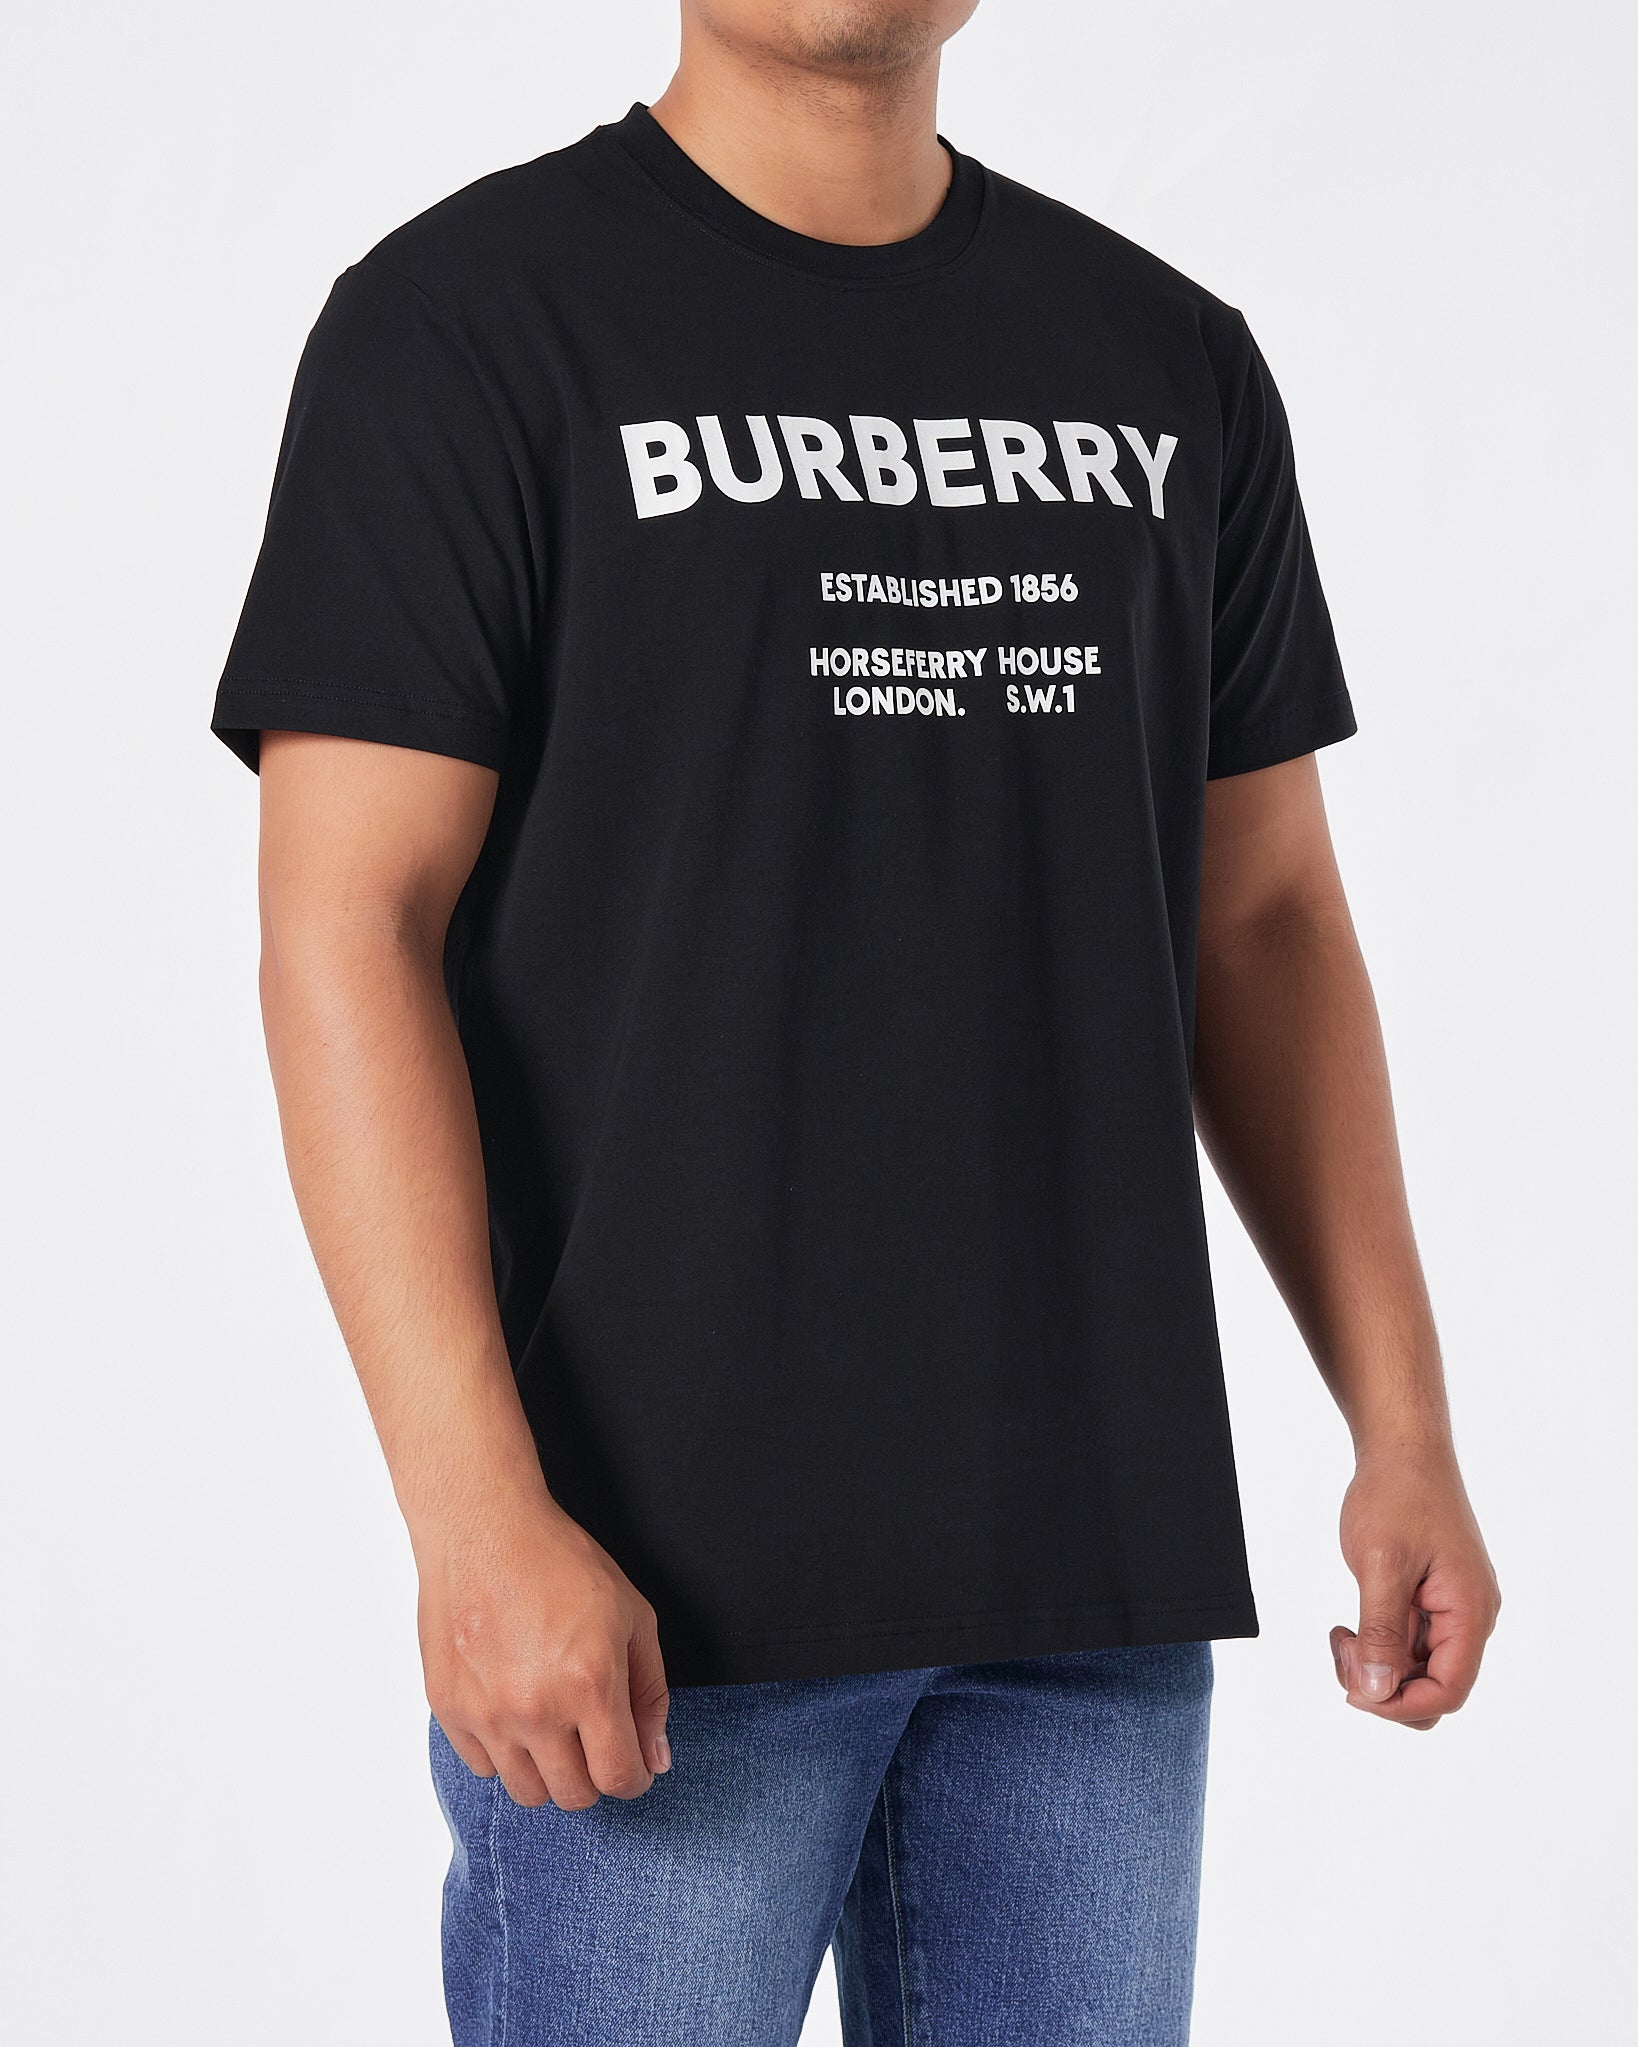 BUR Logo Printed Men Black T-Shirt 16.90